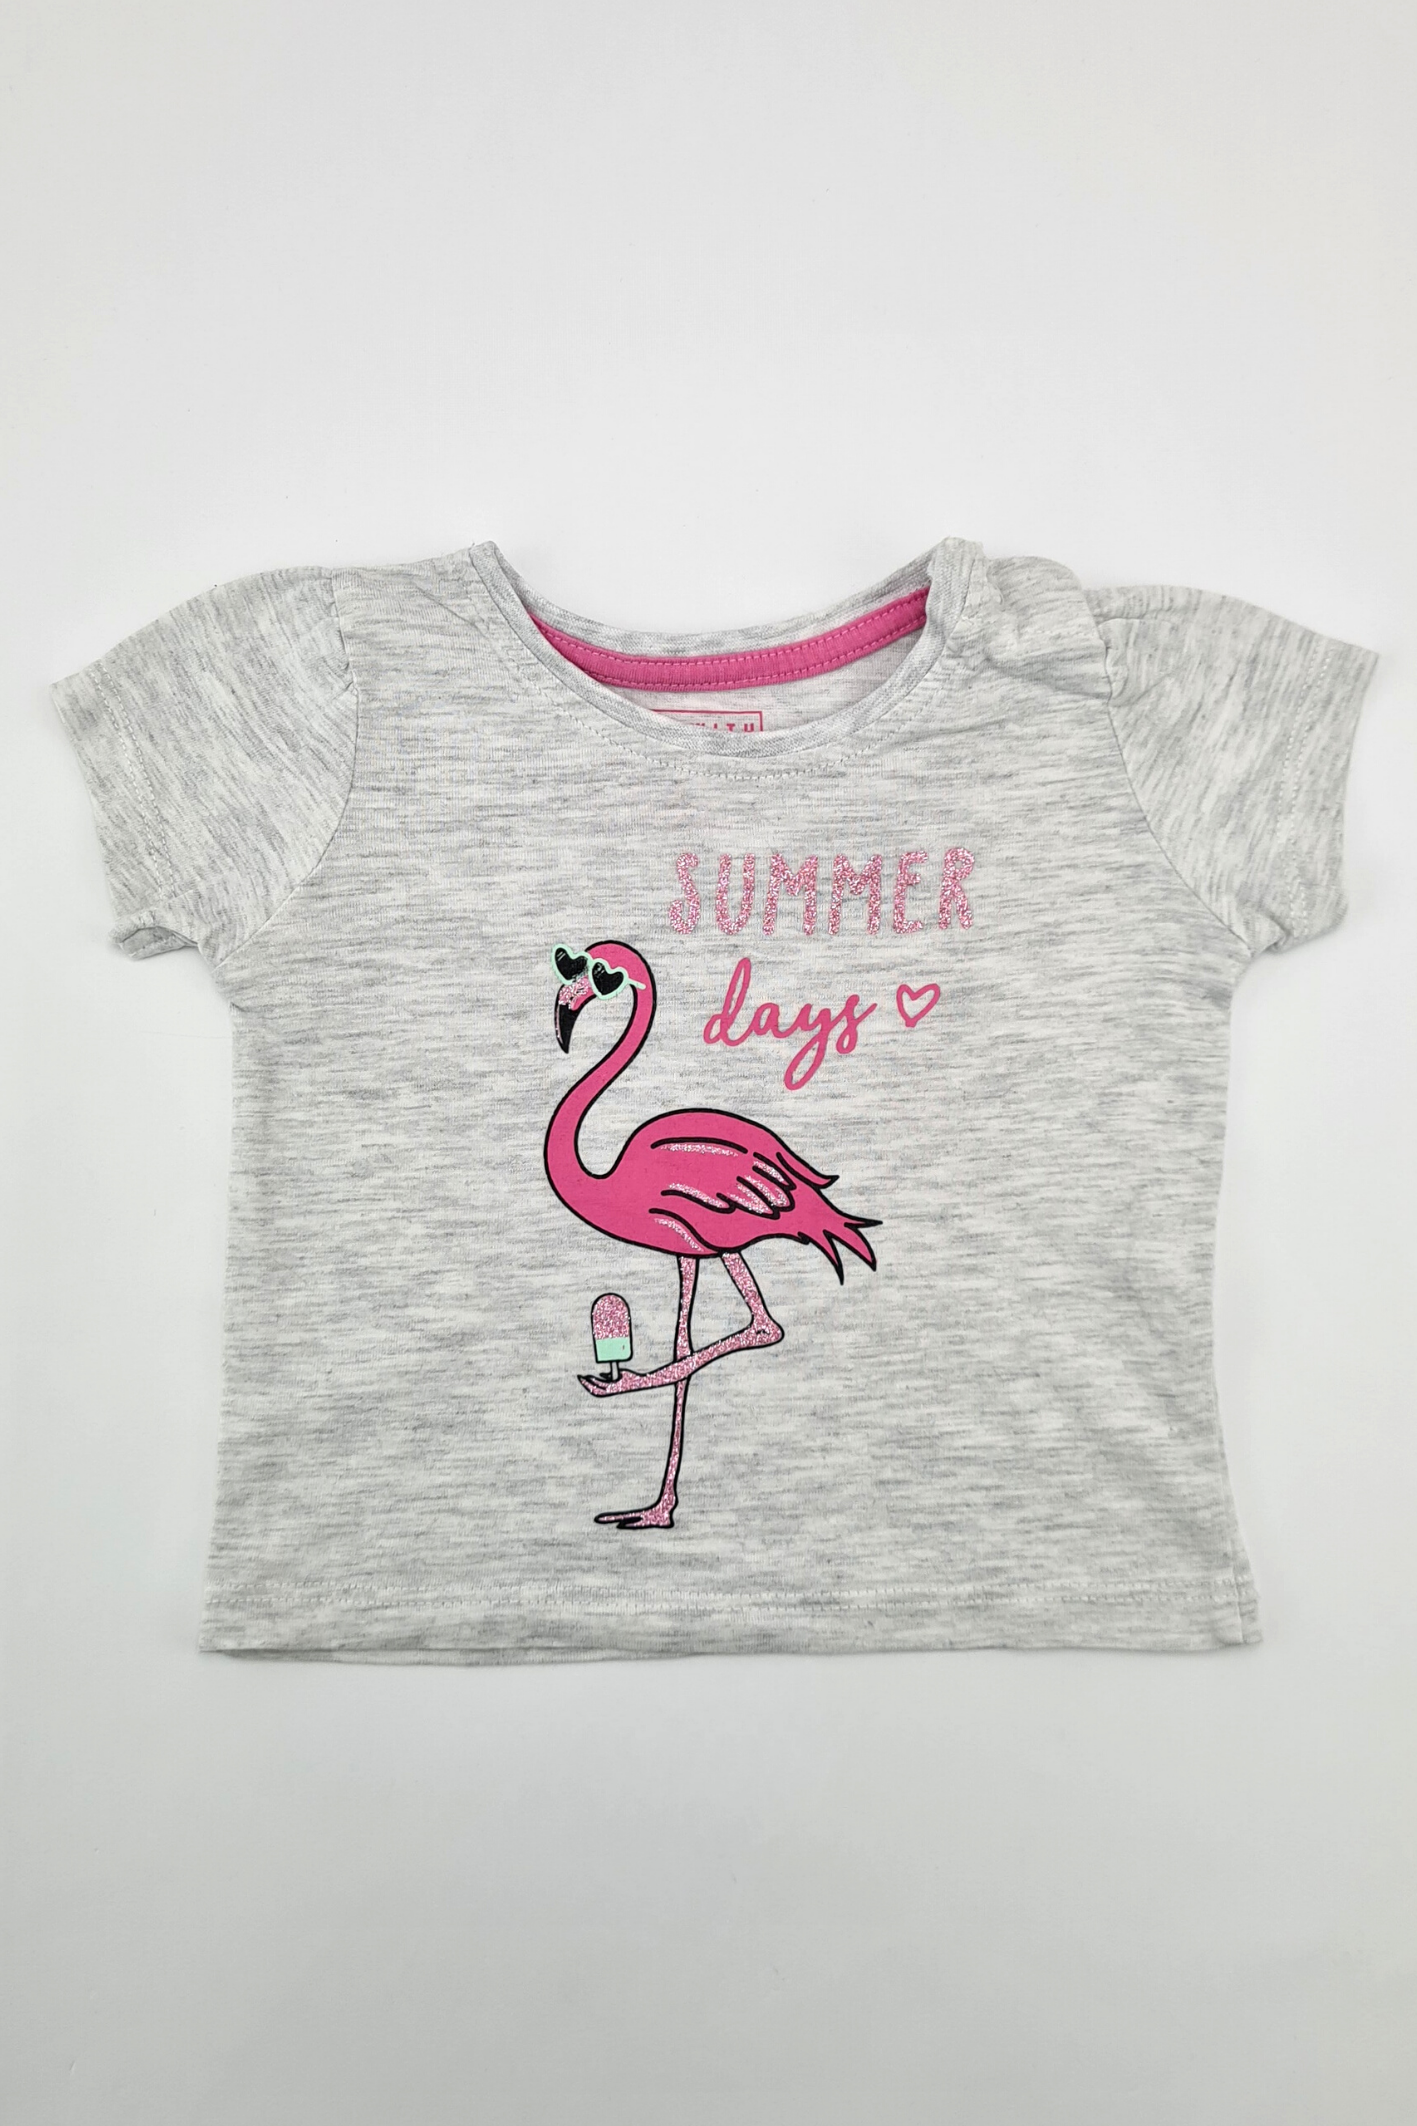 0-3 mois - T-shirt 'Summer Days' (Primark)